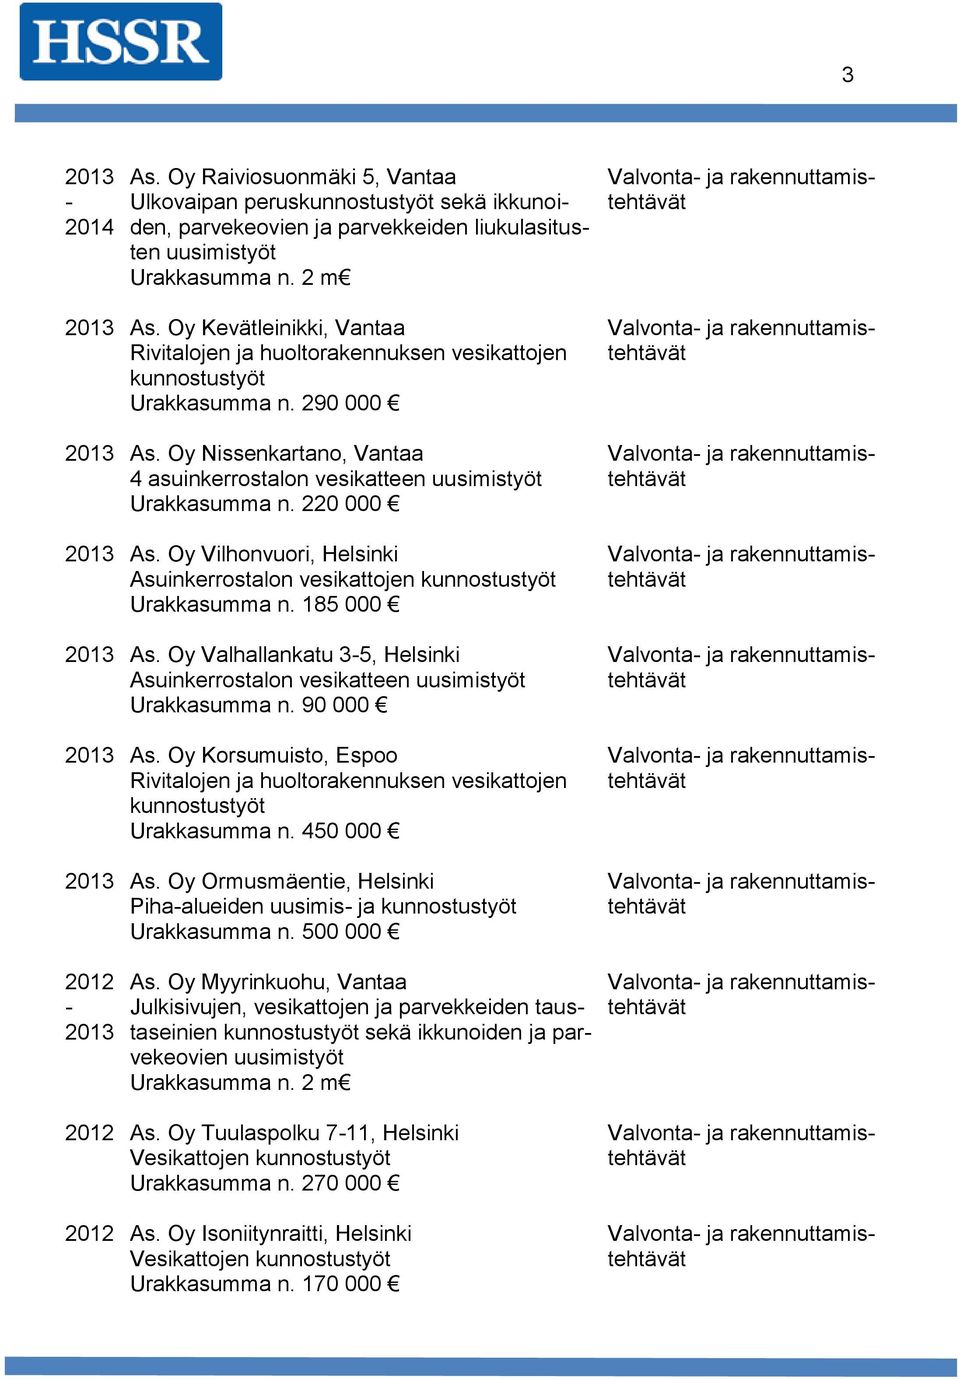 220 000 2013 As. Oy Vilhonvuori, Helsinki Asuinkerrostalon vesikattojen kunnostustyöt Urakkasumma n. 185 000 2013 As.